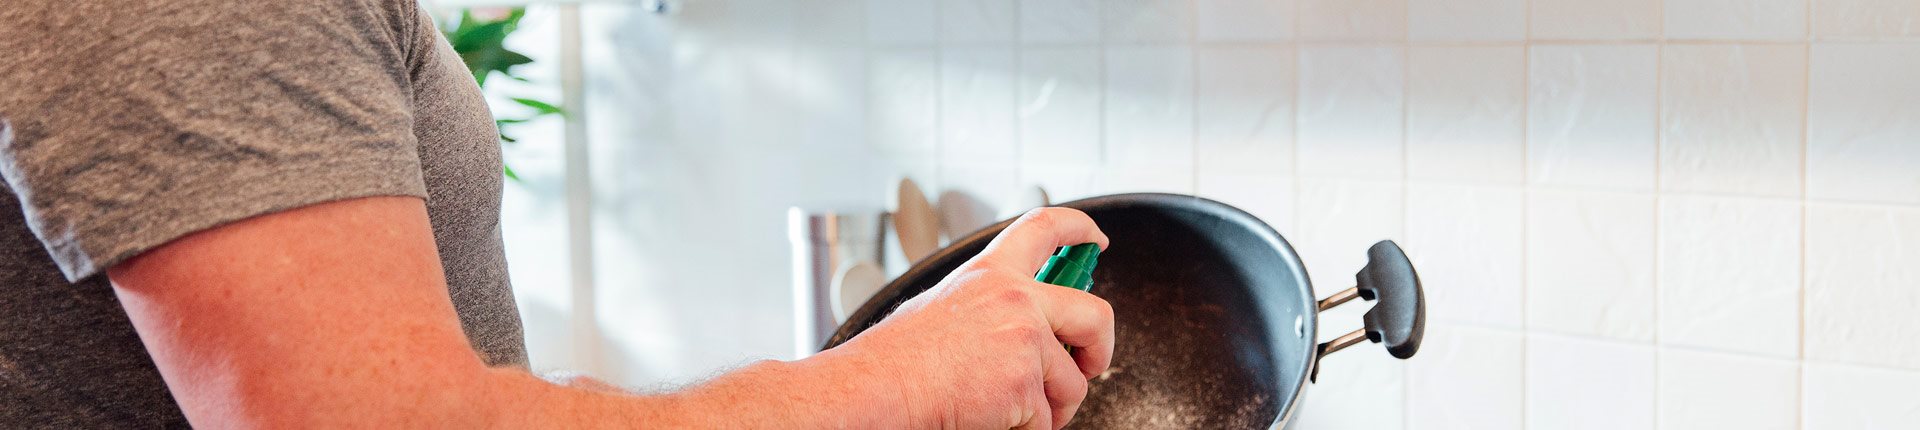 Cooking spray - dlaczego warto używać olej w sprayu na diecie?